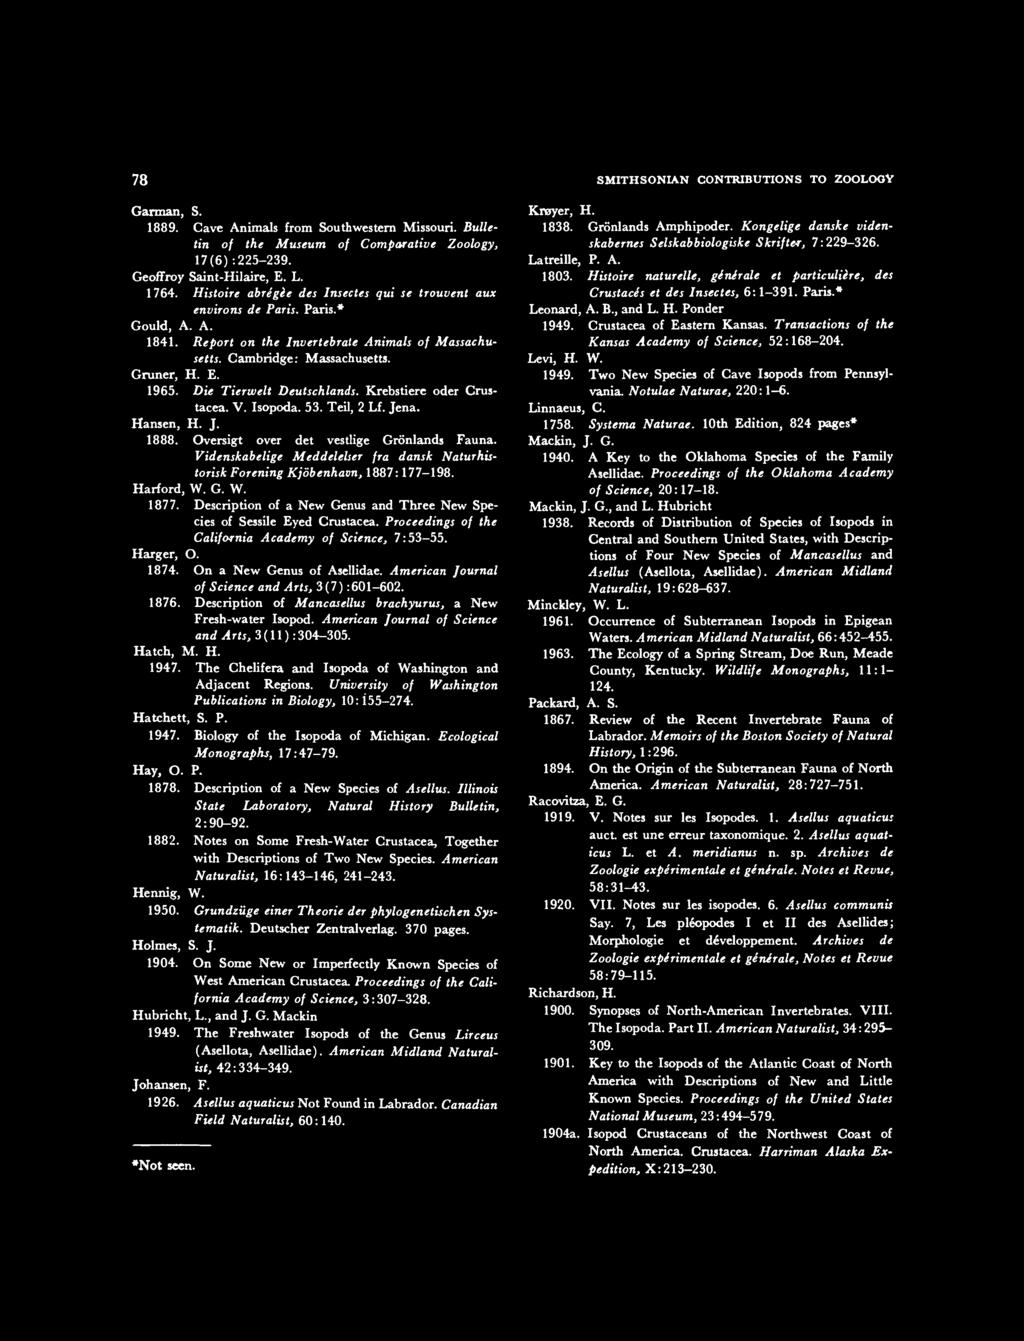 Die Tierwelt Deutschlands. Krebstiere oder Crustacea. V. Isopoda. 53. Teil, 2 Lf. Jena. Hansen, H. J. 1888. Oversigt over det vestlige Gronlands Fauna.